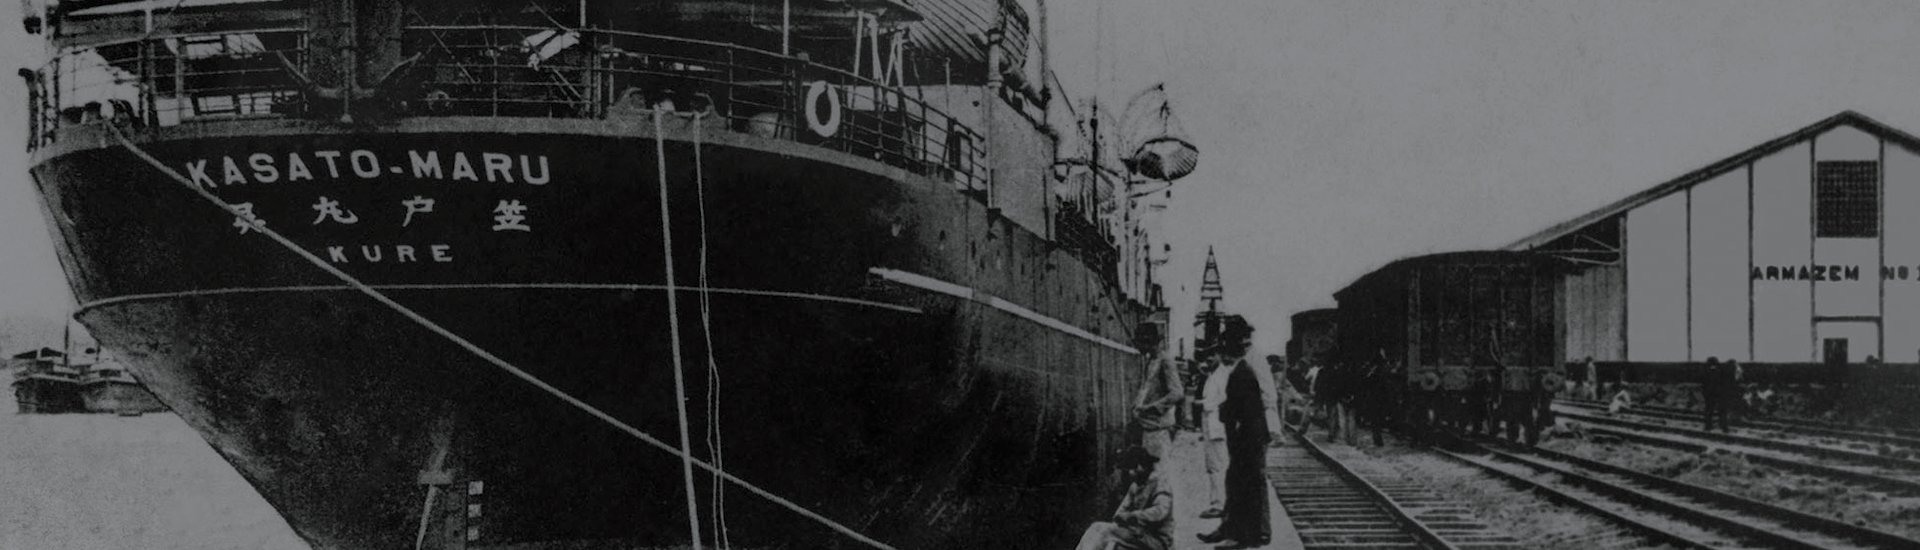 Foto em preto e branco, mostrando a proa do navio Kasato Maru, ao lado de um trilho de trem e um grande galpão escrito "Armazem".